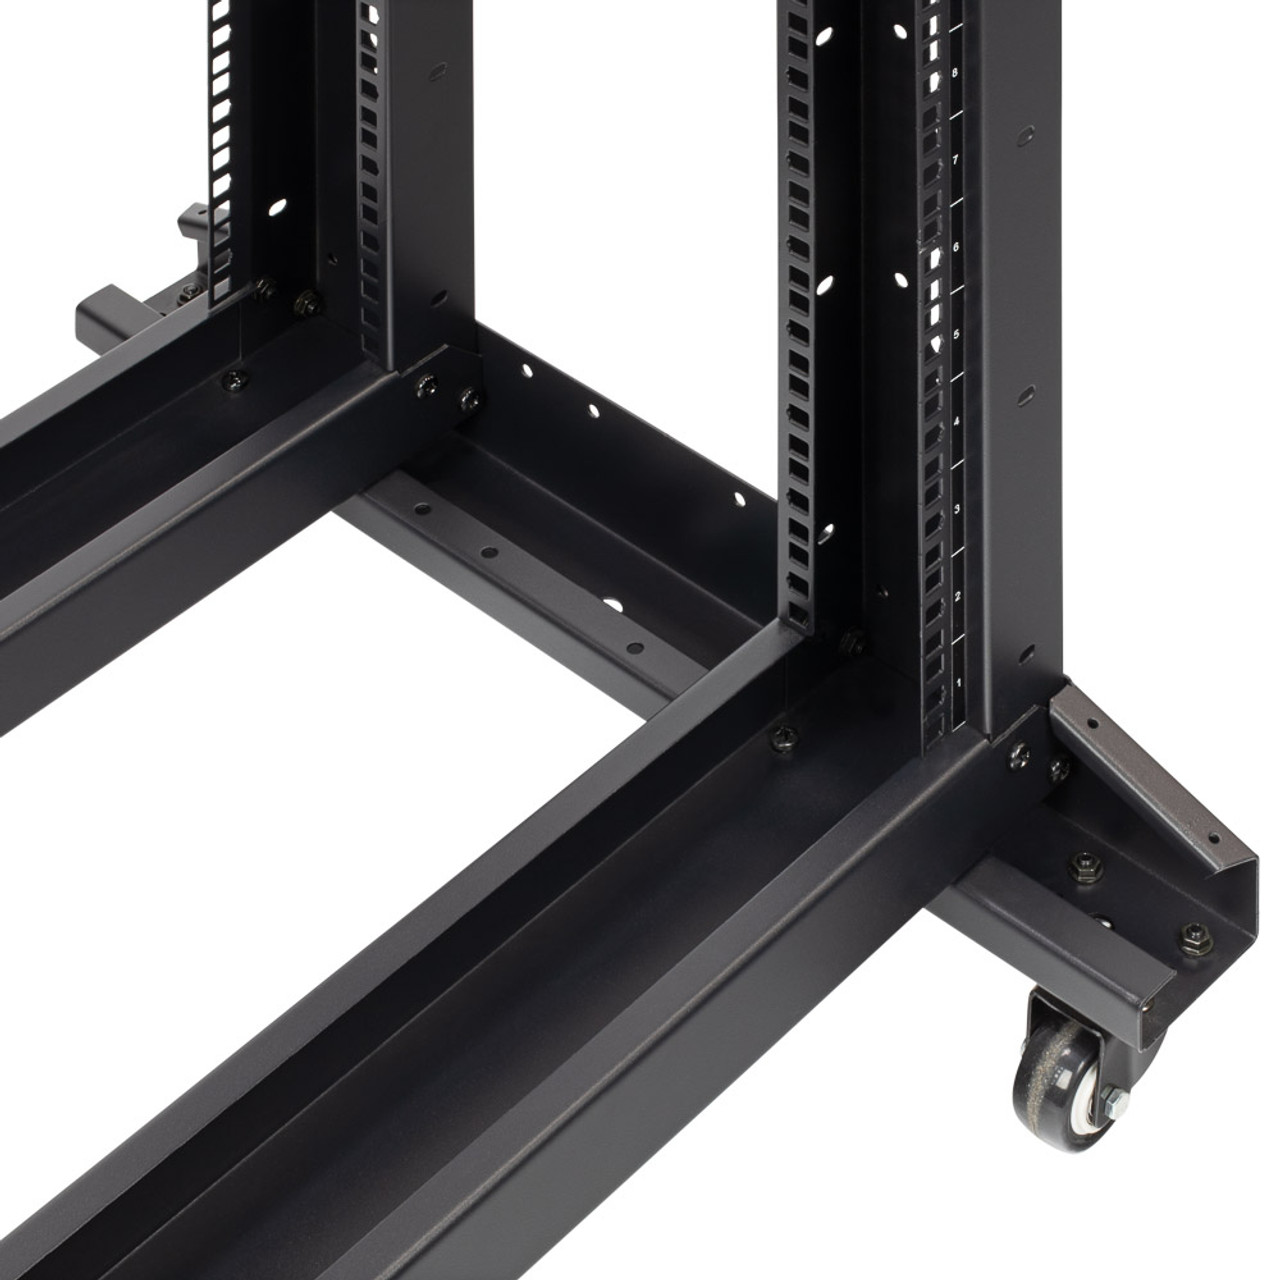 4-Post open frame server rack, adjustable depth 42U